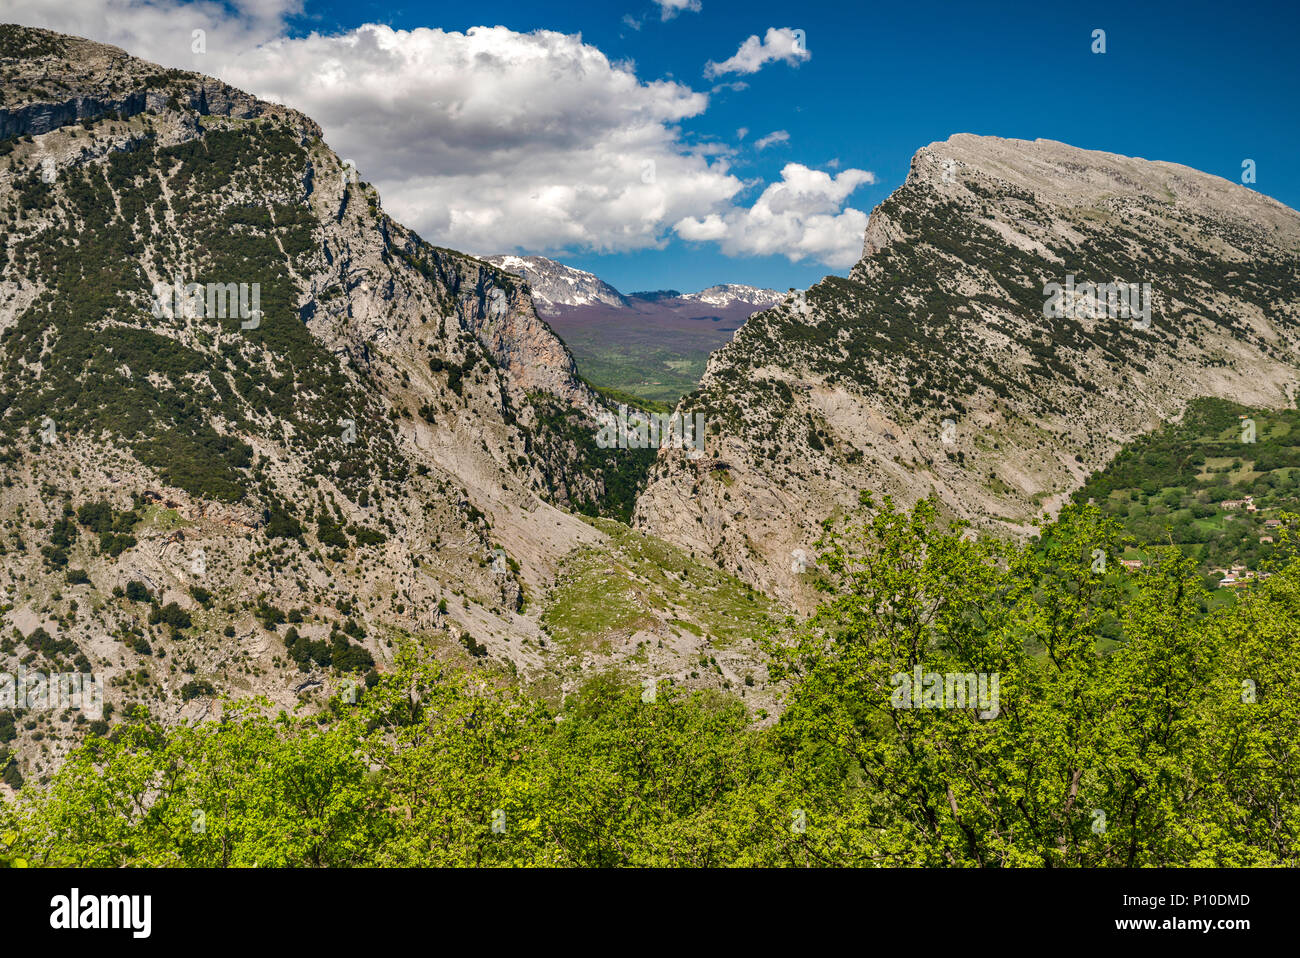 Gole del Raganello Raganello (Canyon), vue de San Lorenzo Bellizzi, le sud de l'Apennin, le parc national du Pollino, Calabre, Italie Banque D'Images